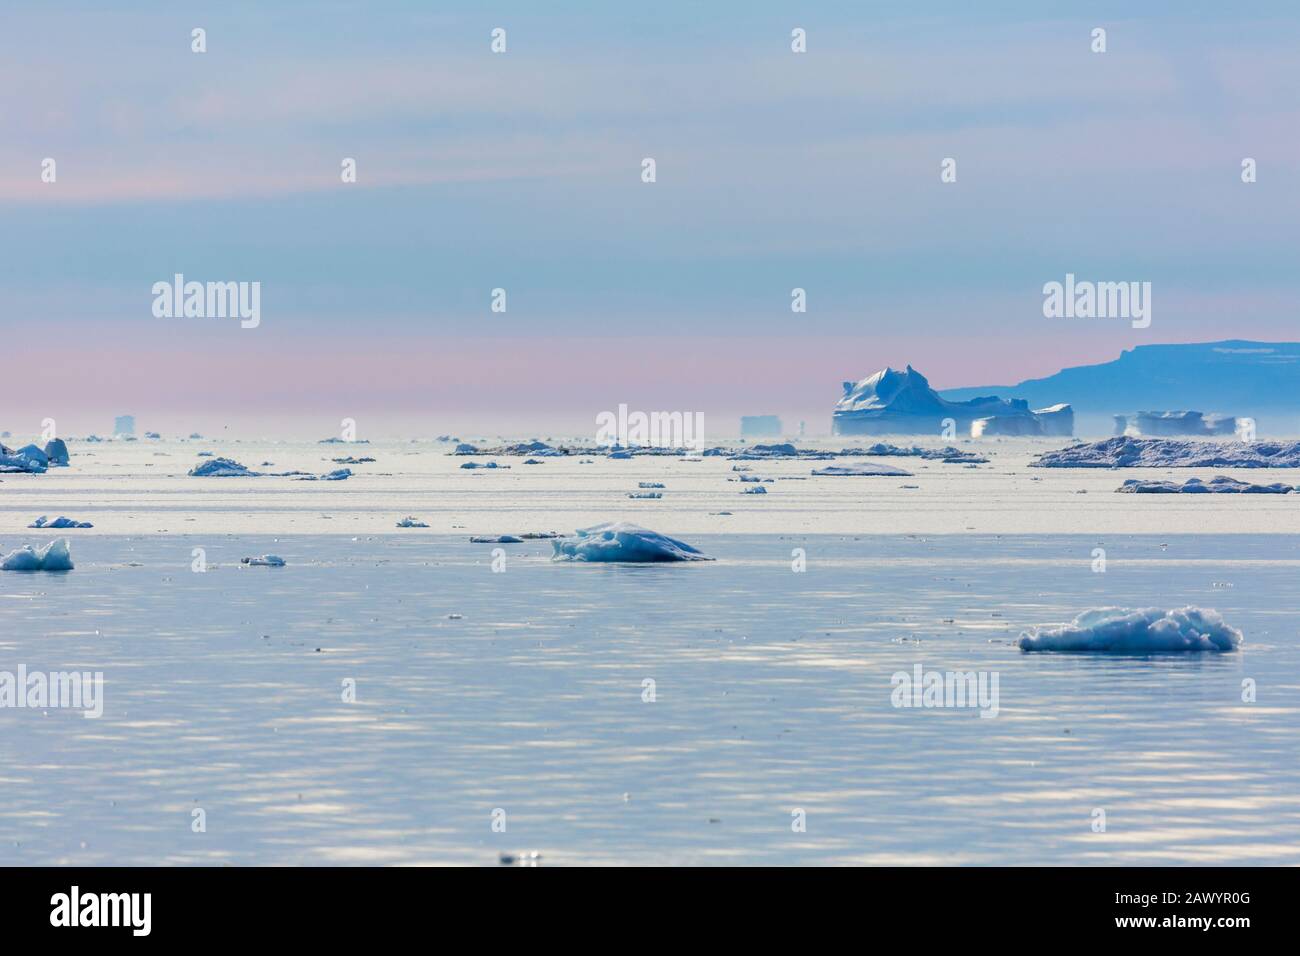 La glace polaire fond sur l'océan Atlantique tranquille Groenland Banque D'Images